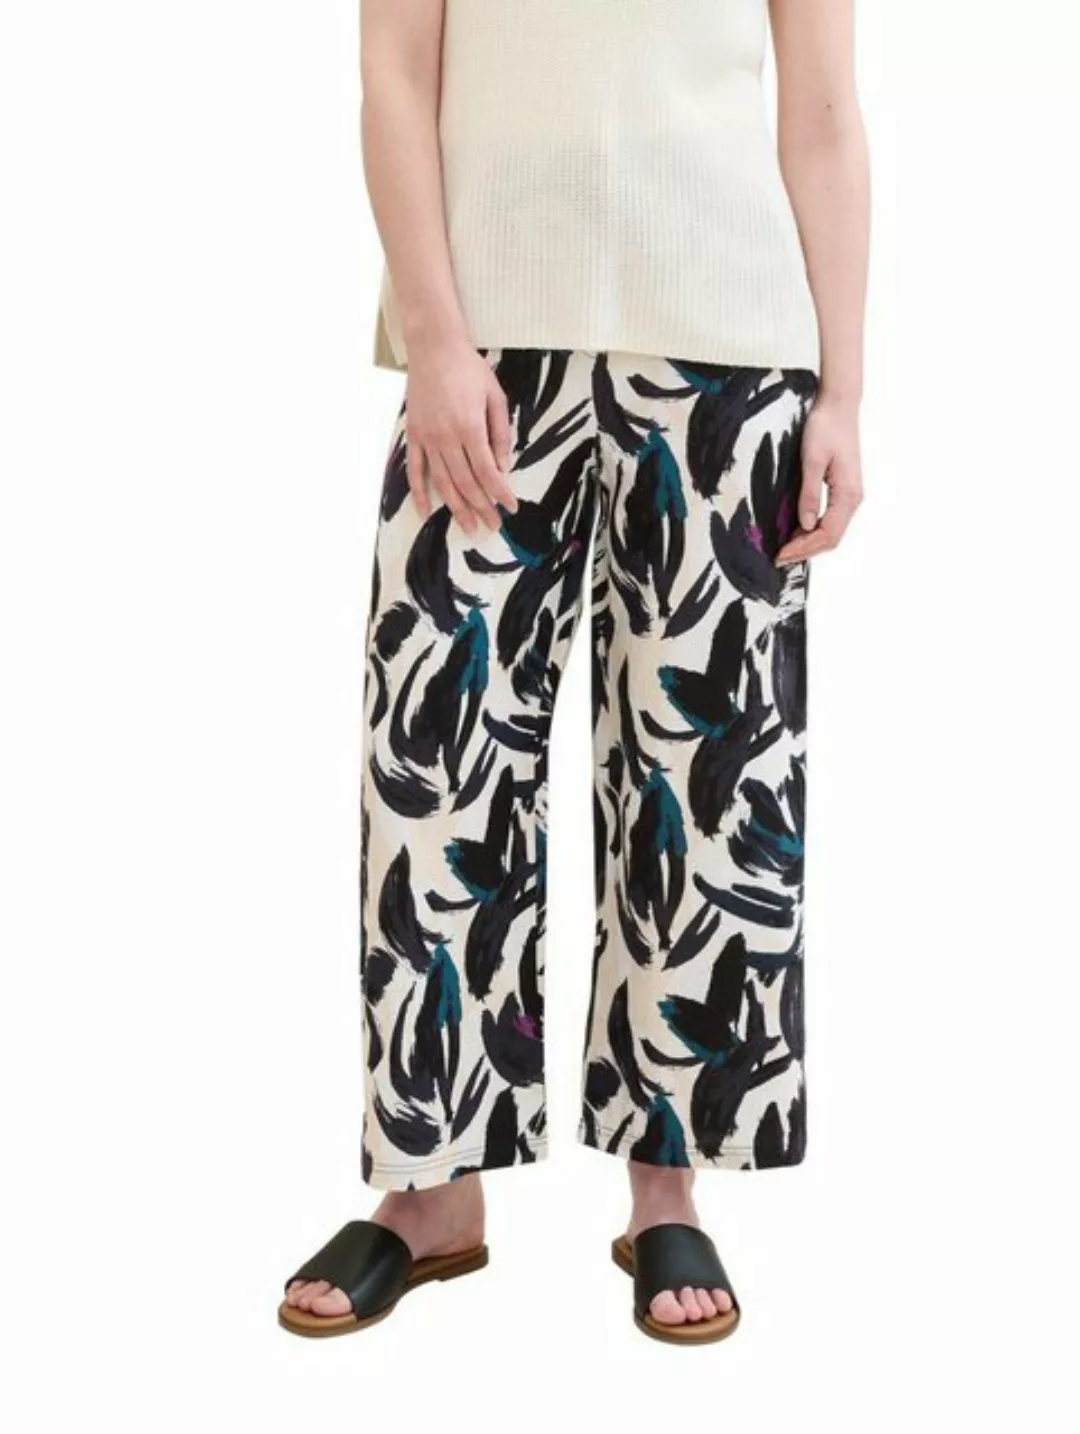 TOM TAILOR Stoffhose culotte linen pants, dark blue floral design günstig online kaufen